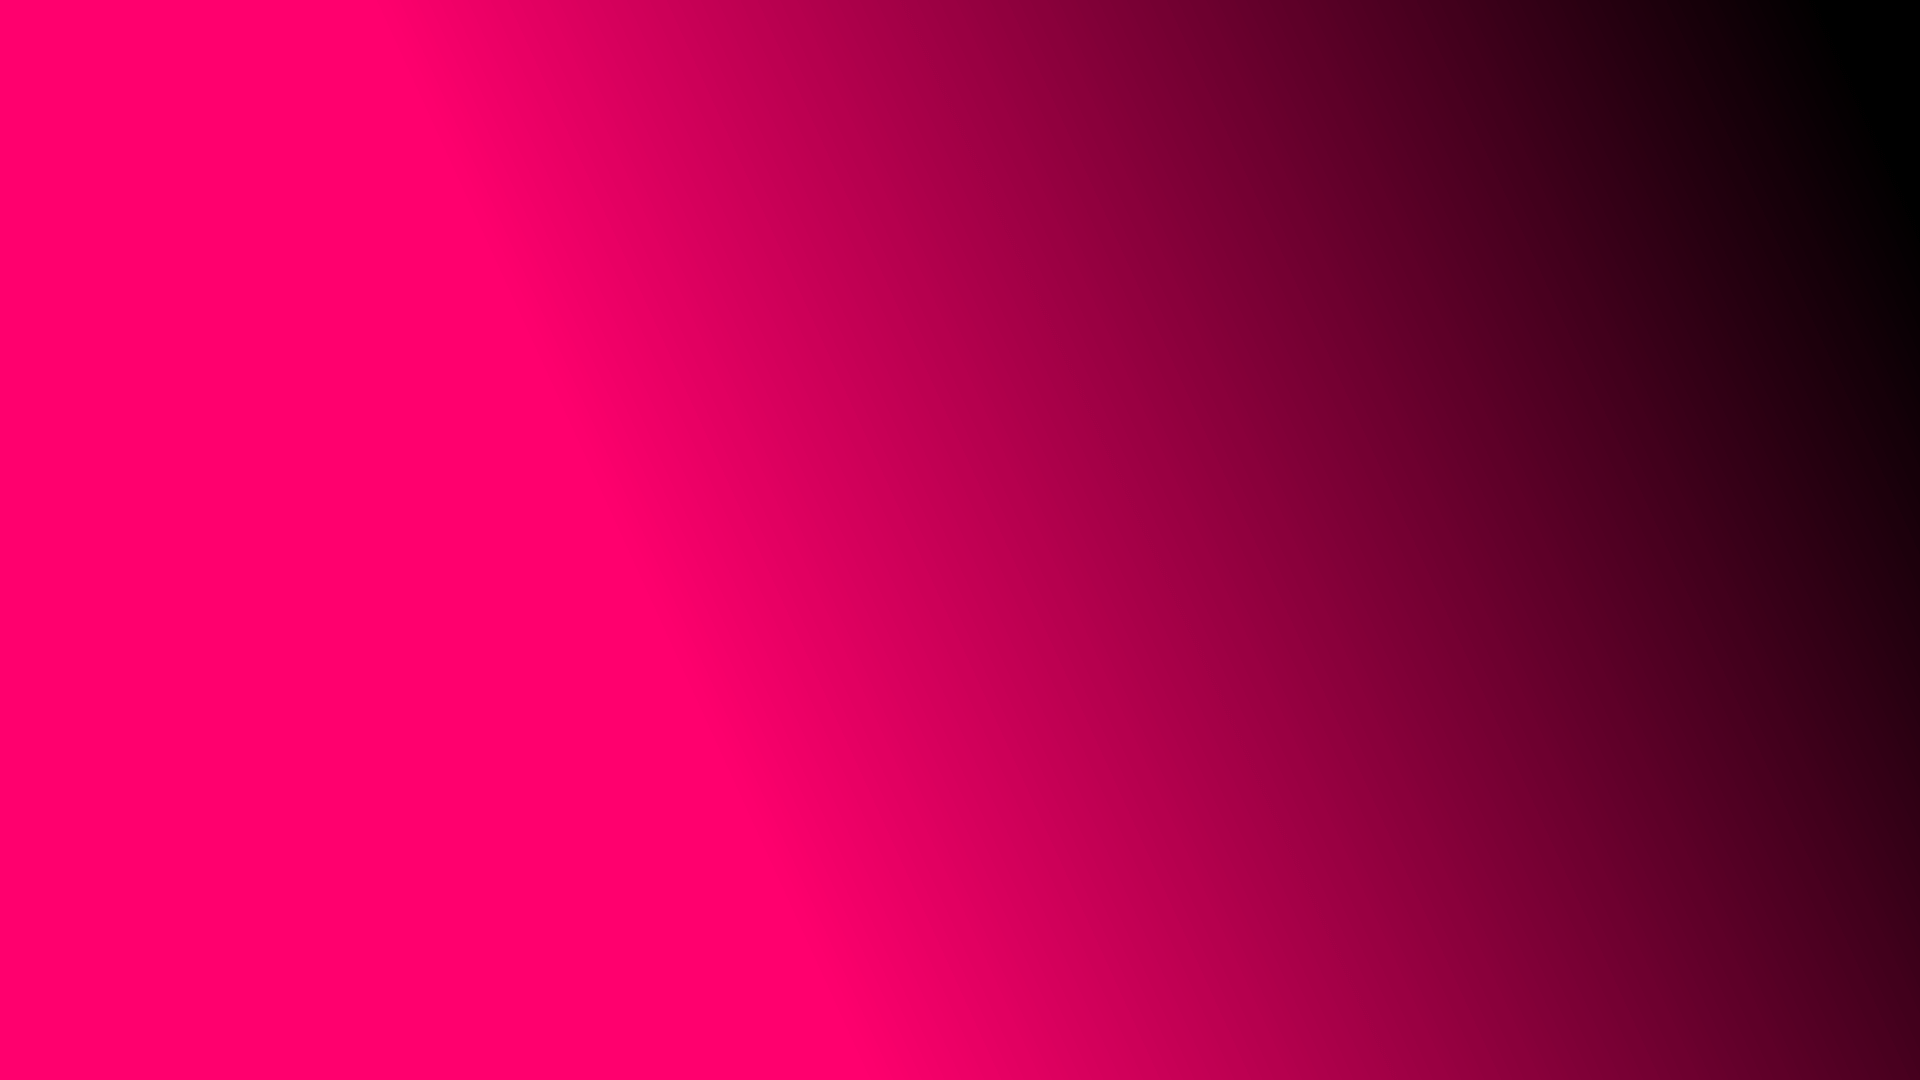 wallpaper desktop gradient pink black backgorund